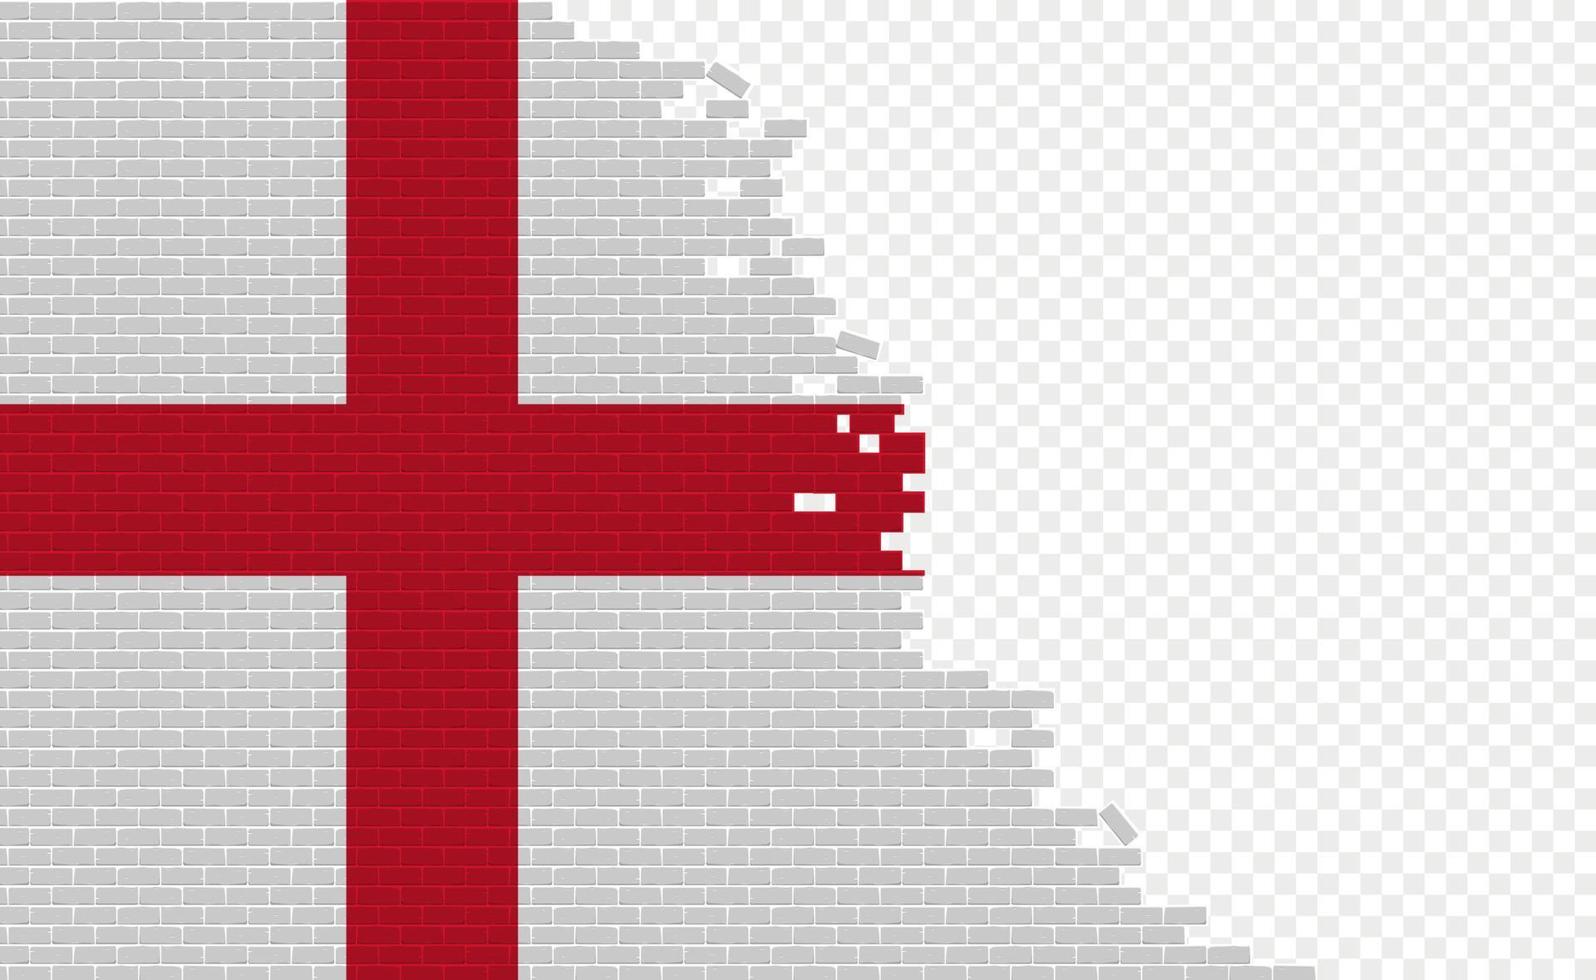 bandera de inglaterra en la pared de ladrillos rotos. campo de bandera vacío de otro país. comparación de países. fácil edición y vector en grupos.